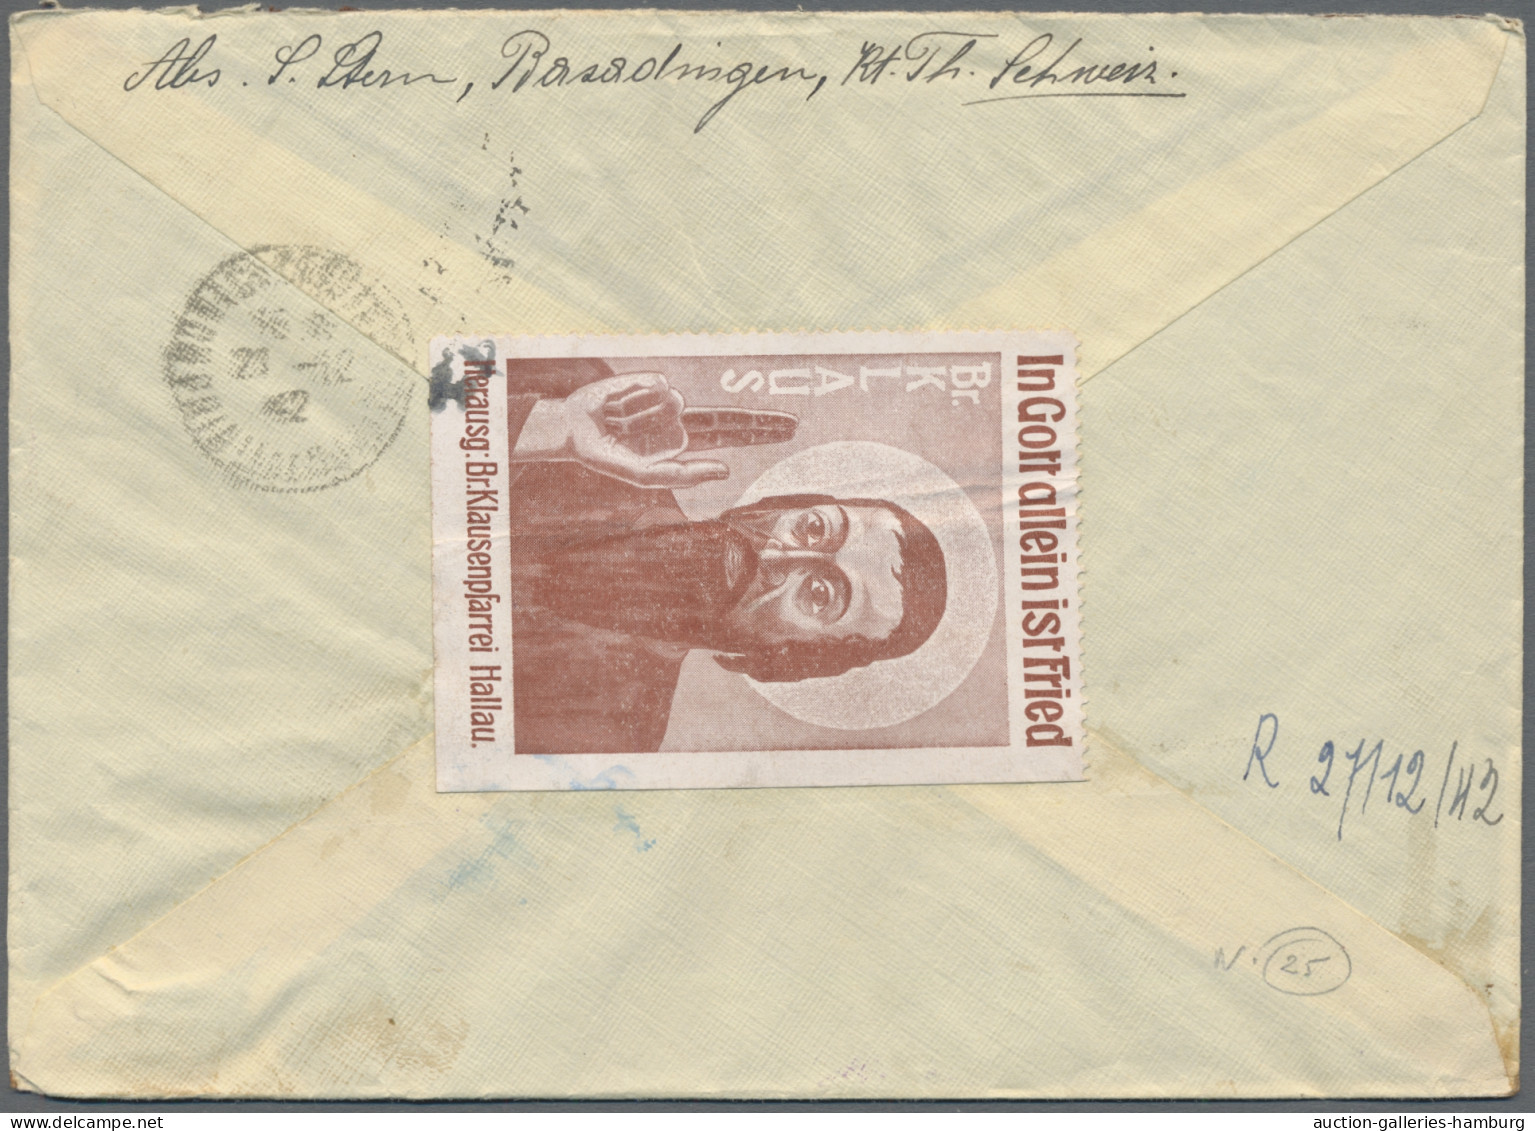 Schweiz: 1930-1960, 136 Briefe oder Karten aus der Schweiz in das Fürstentum Mon